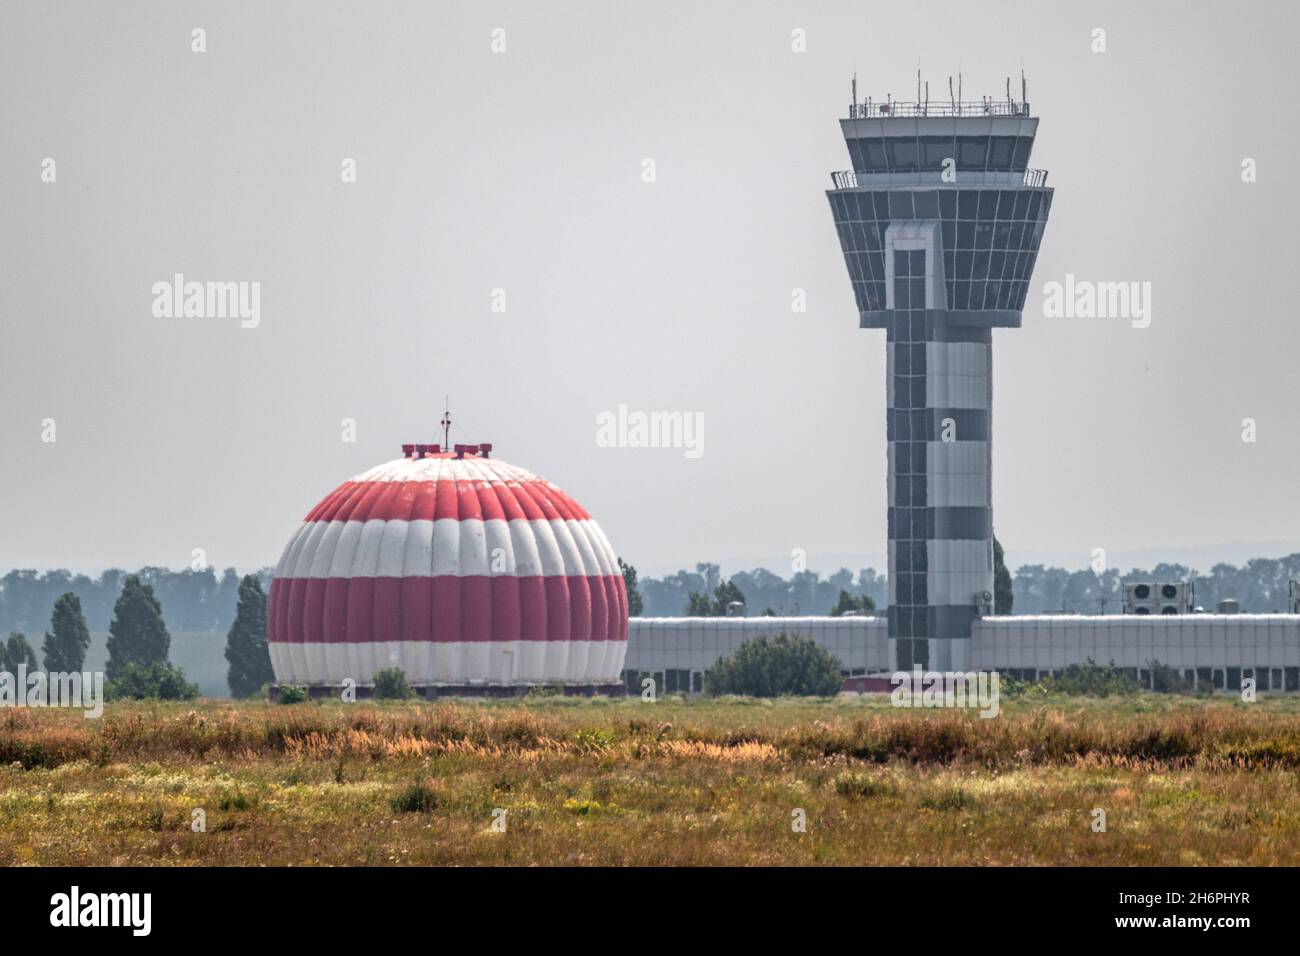 Torre di controllo dell'aeroporto internazionale e radome o edificio a cupola radar dell'aviazione dipinto in strisce rosse e bianche in campo di erba secca con cielo grigio. Khar Foto Stock